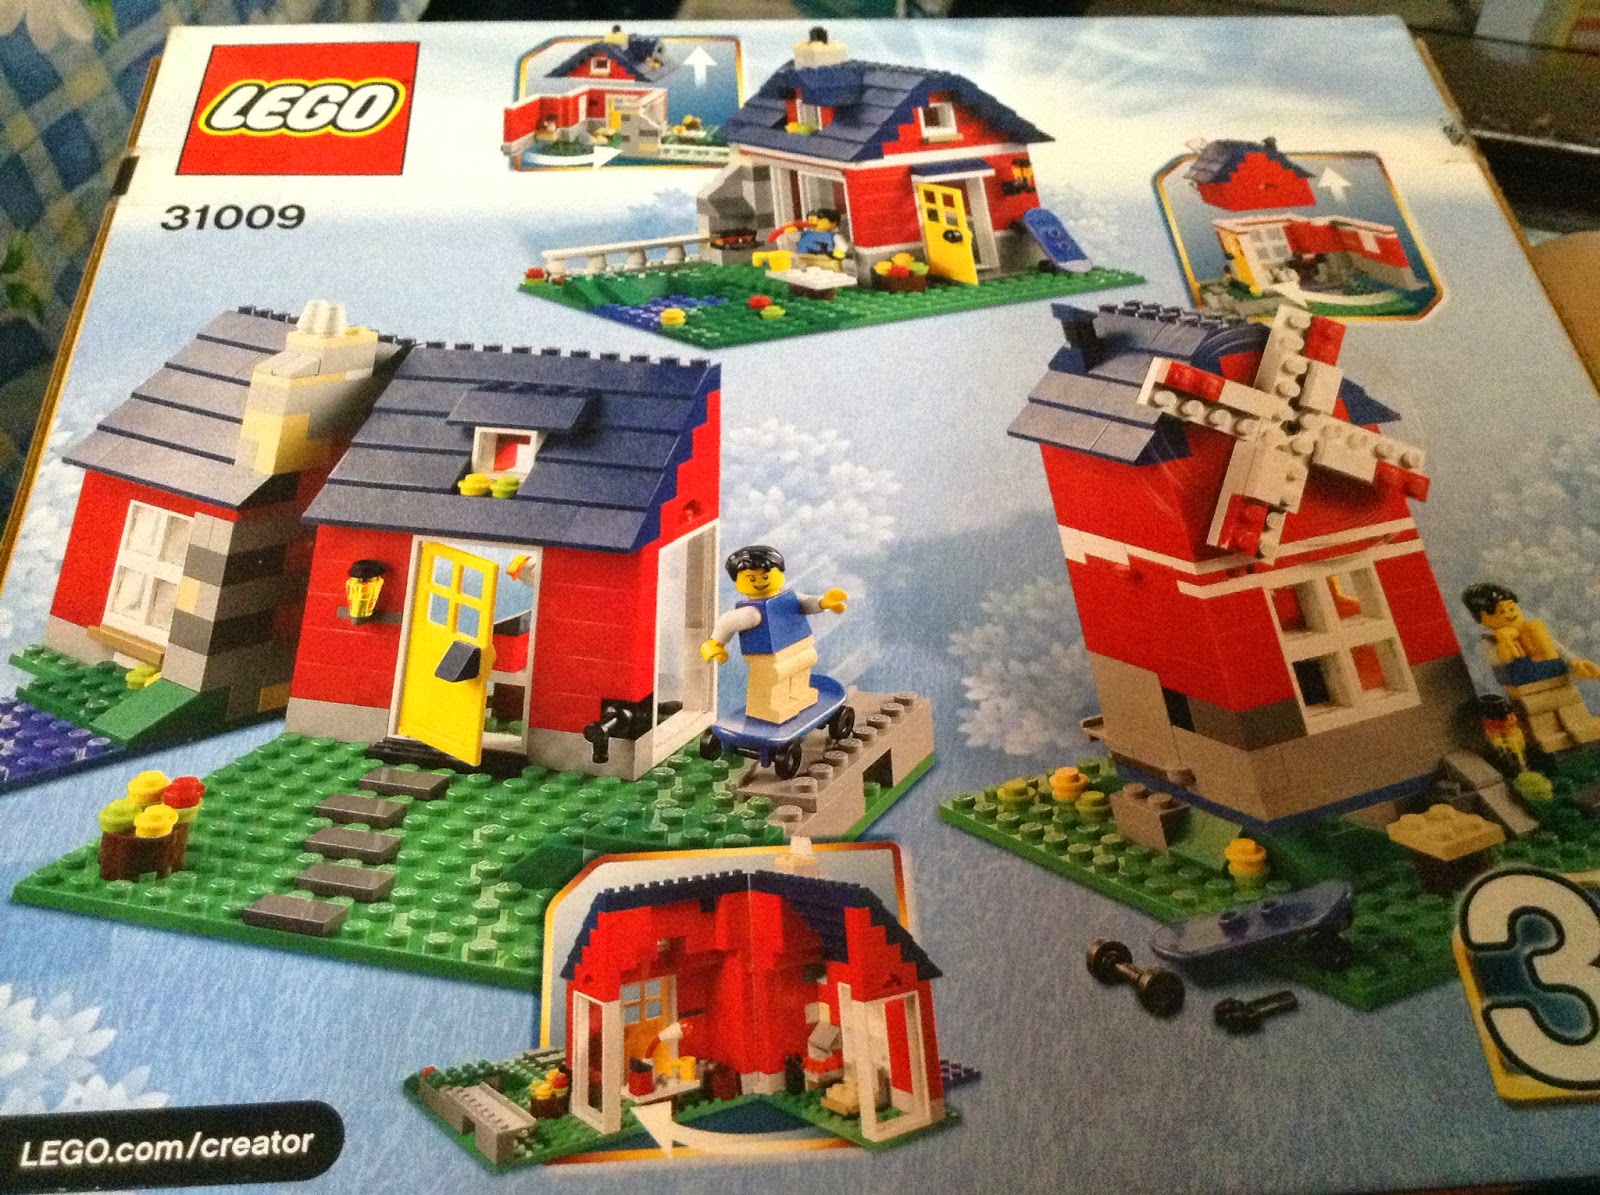 Junction rent Nogle gange nogle gange Taleweaver's Brick Stories: Review: Lego 31009 Creator Small Cottage